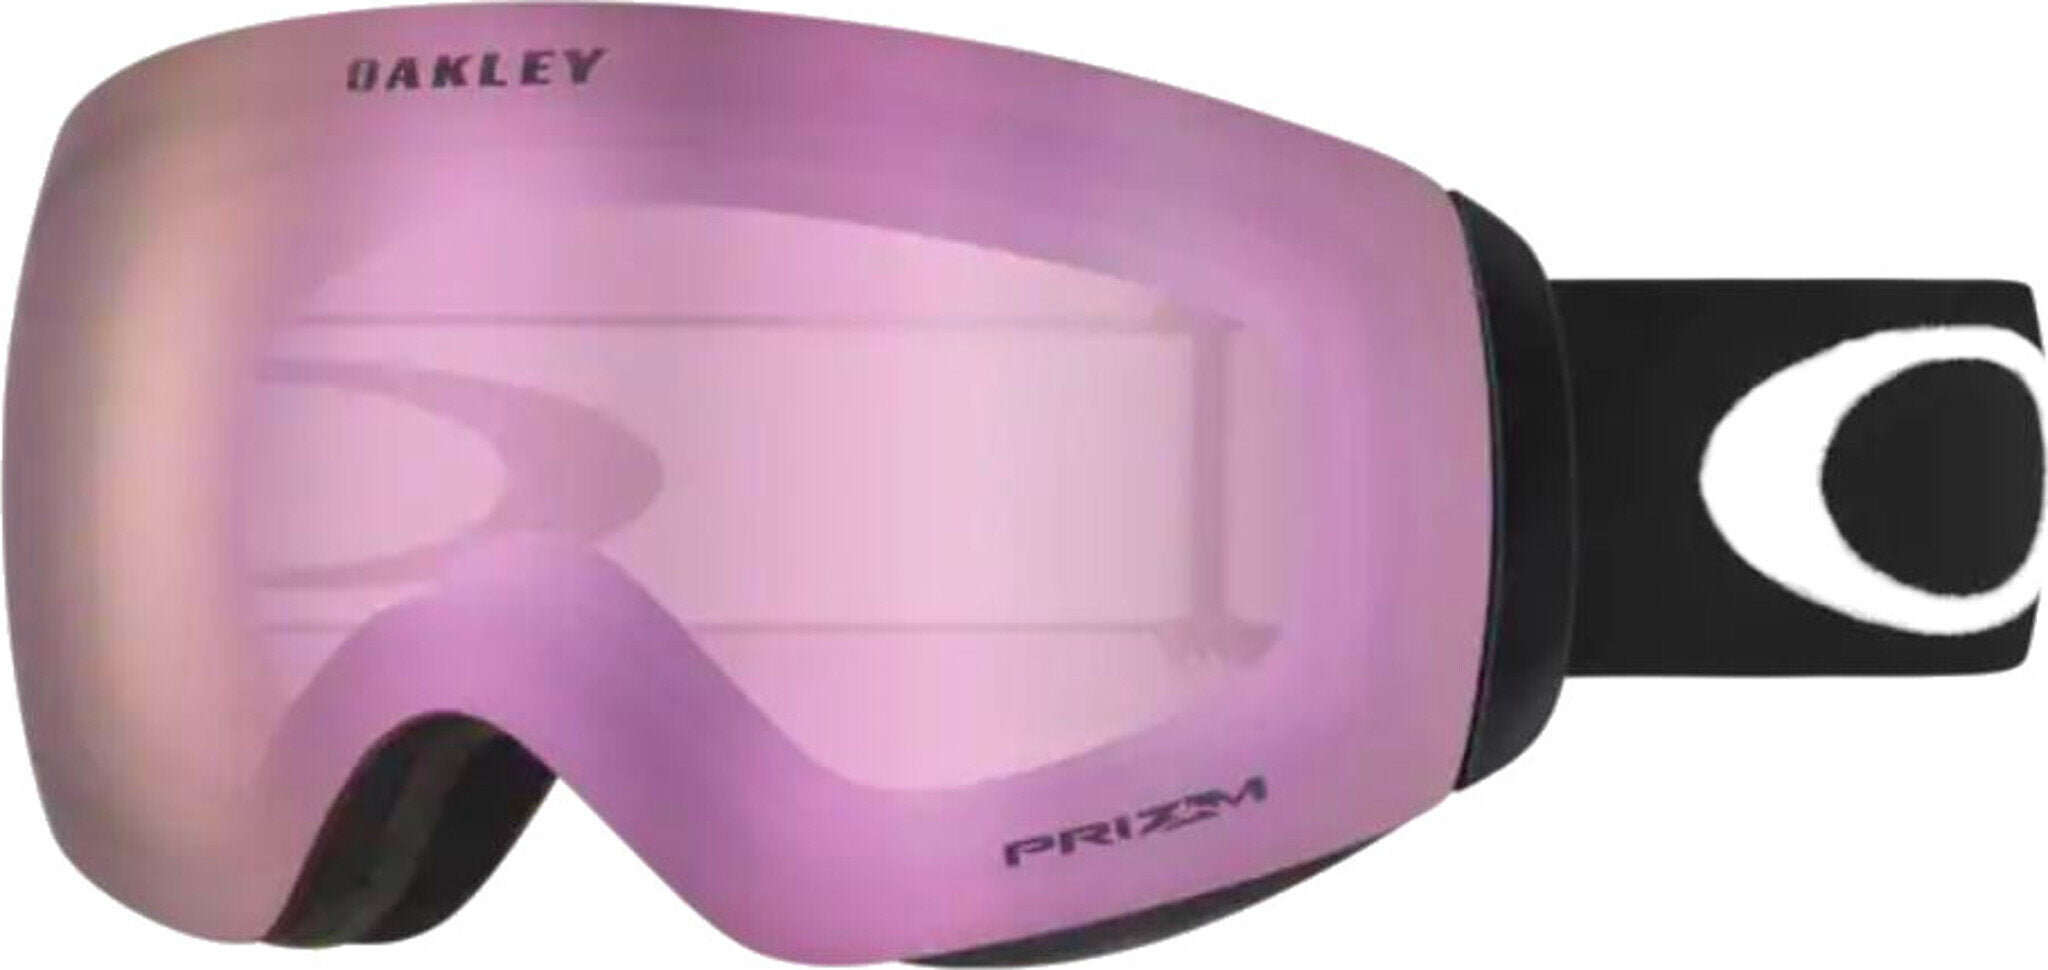 Oakley Flight Deck M Goggles - Matte Black - Prizm HI Pink Iridium Lens |  Altitude Sports